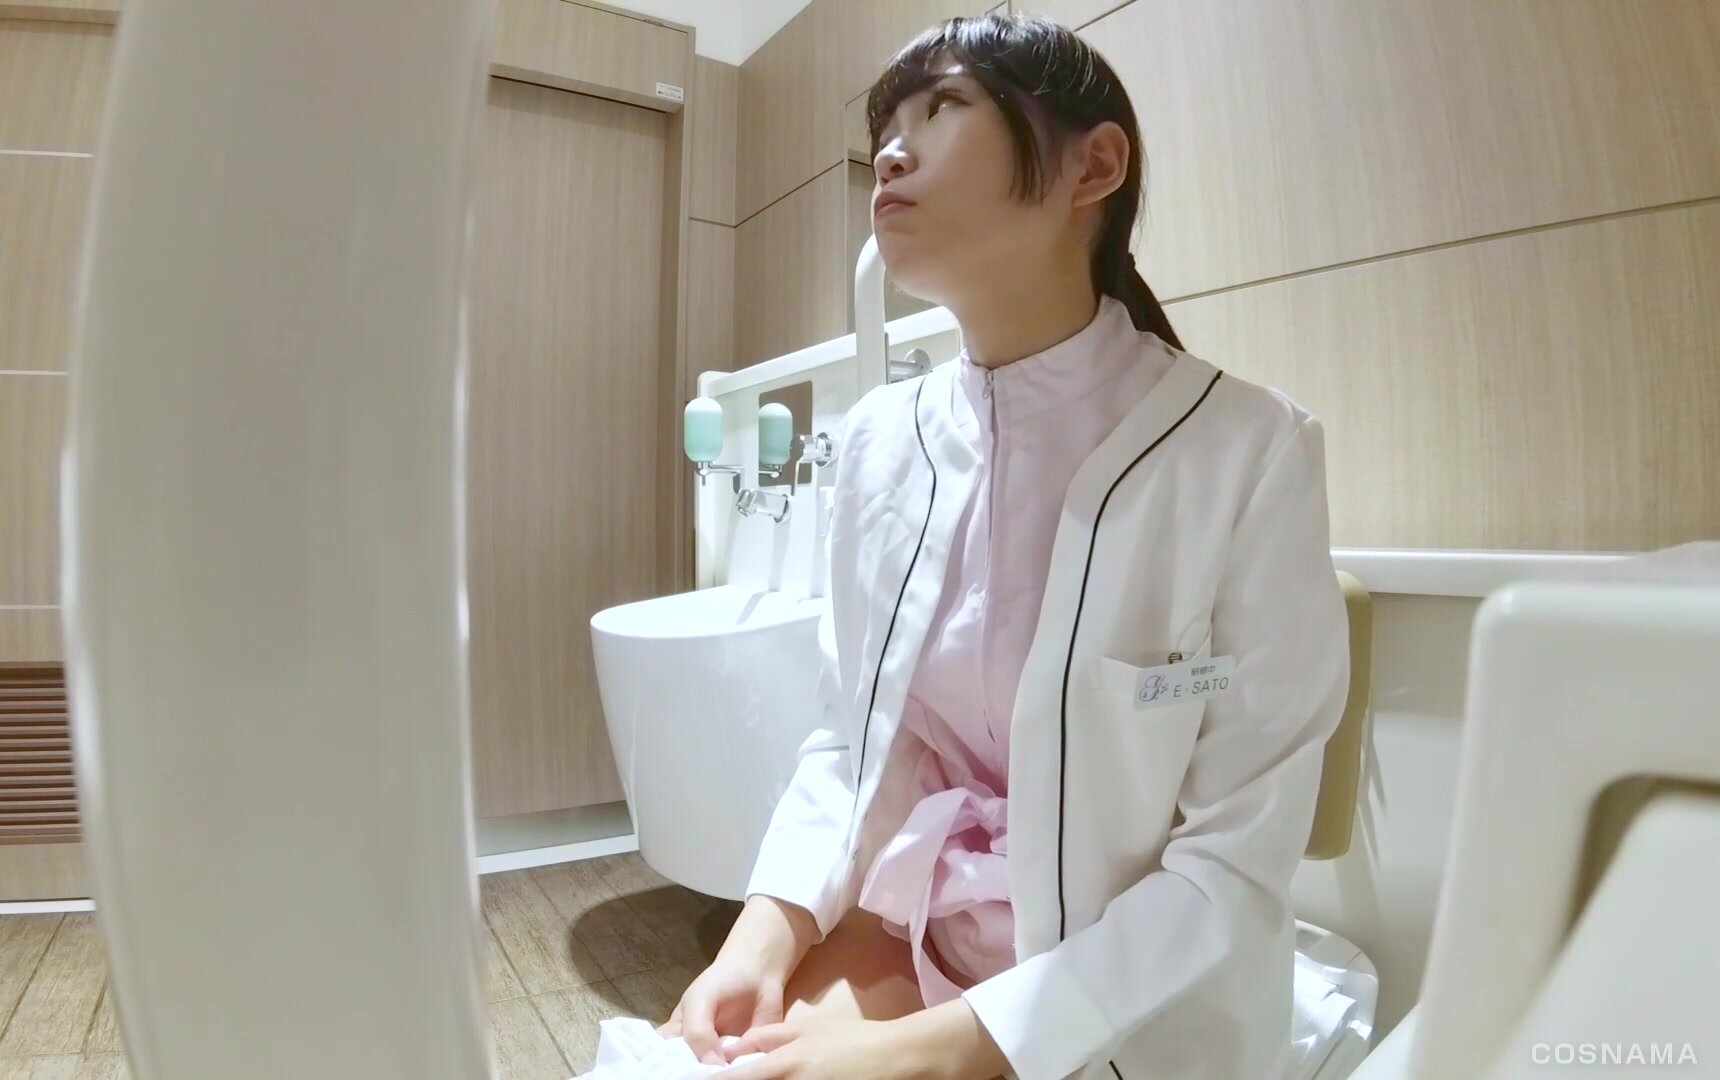 Nurse bathroom pee